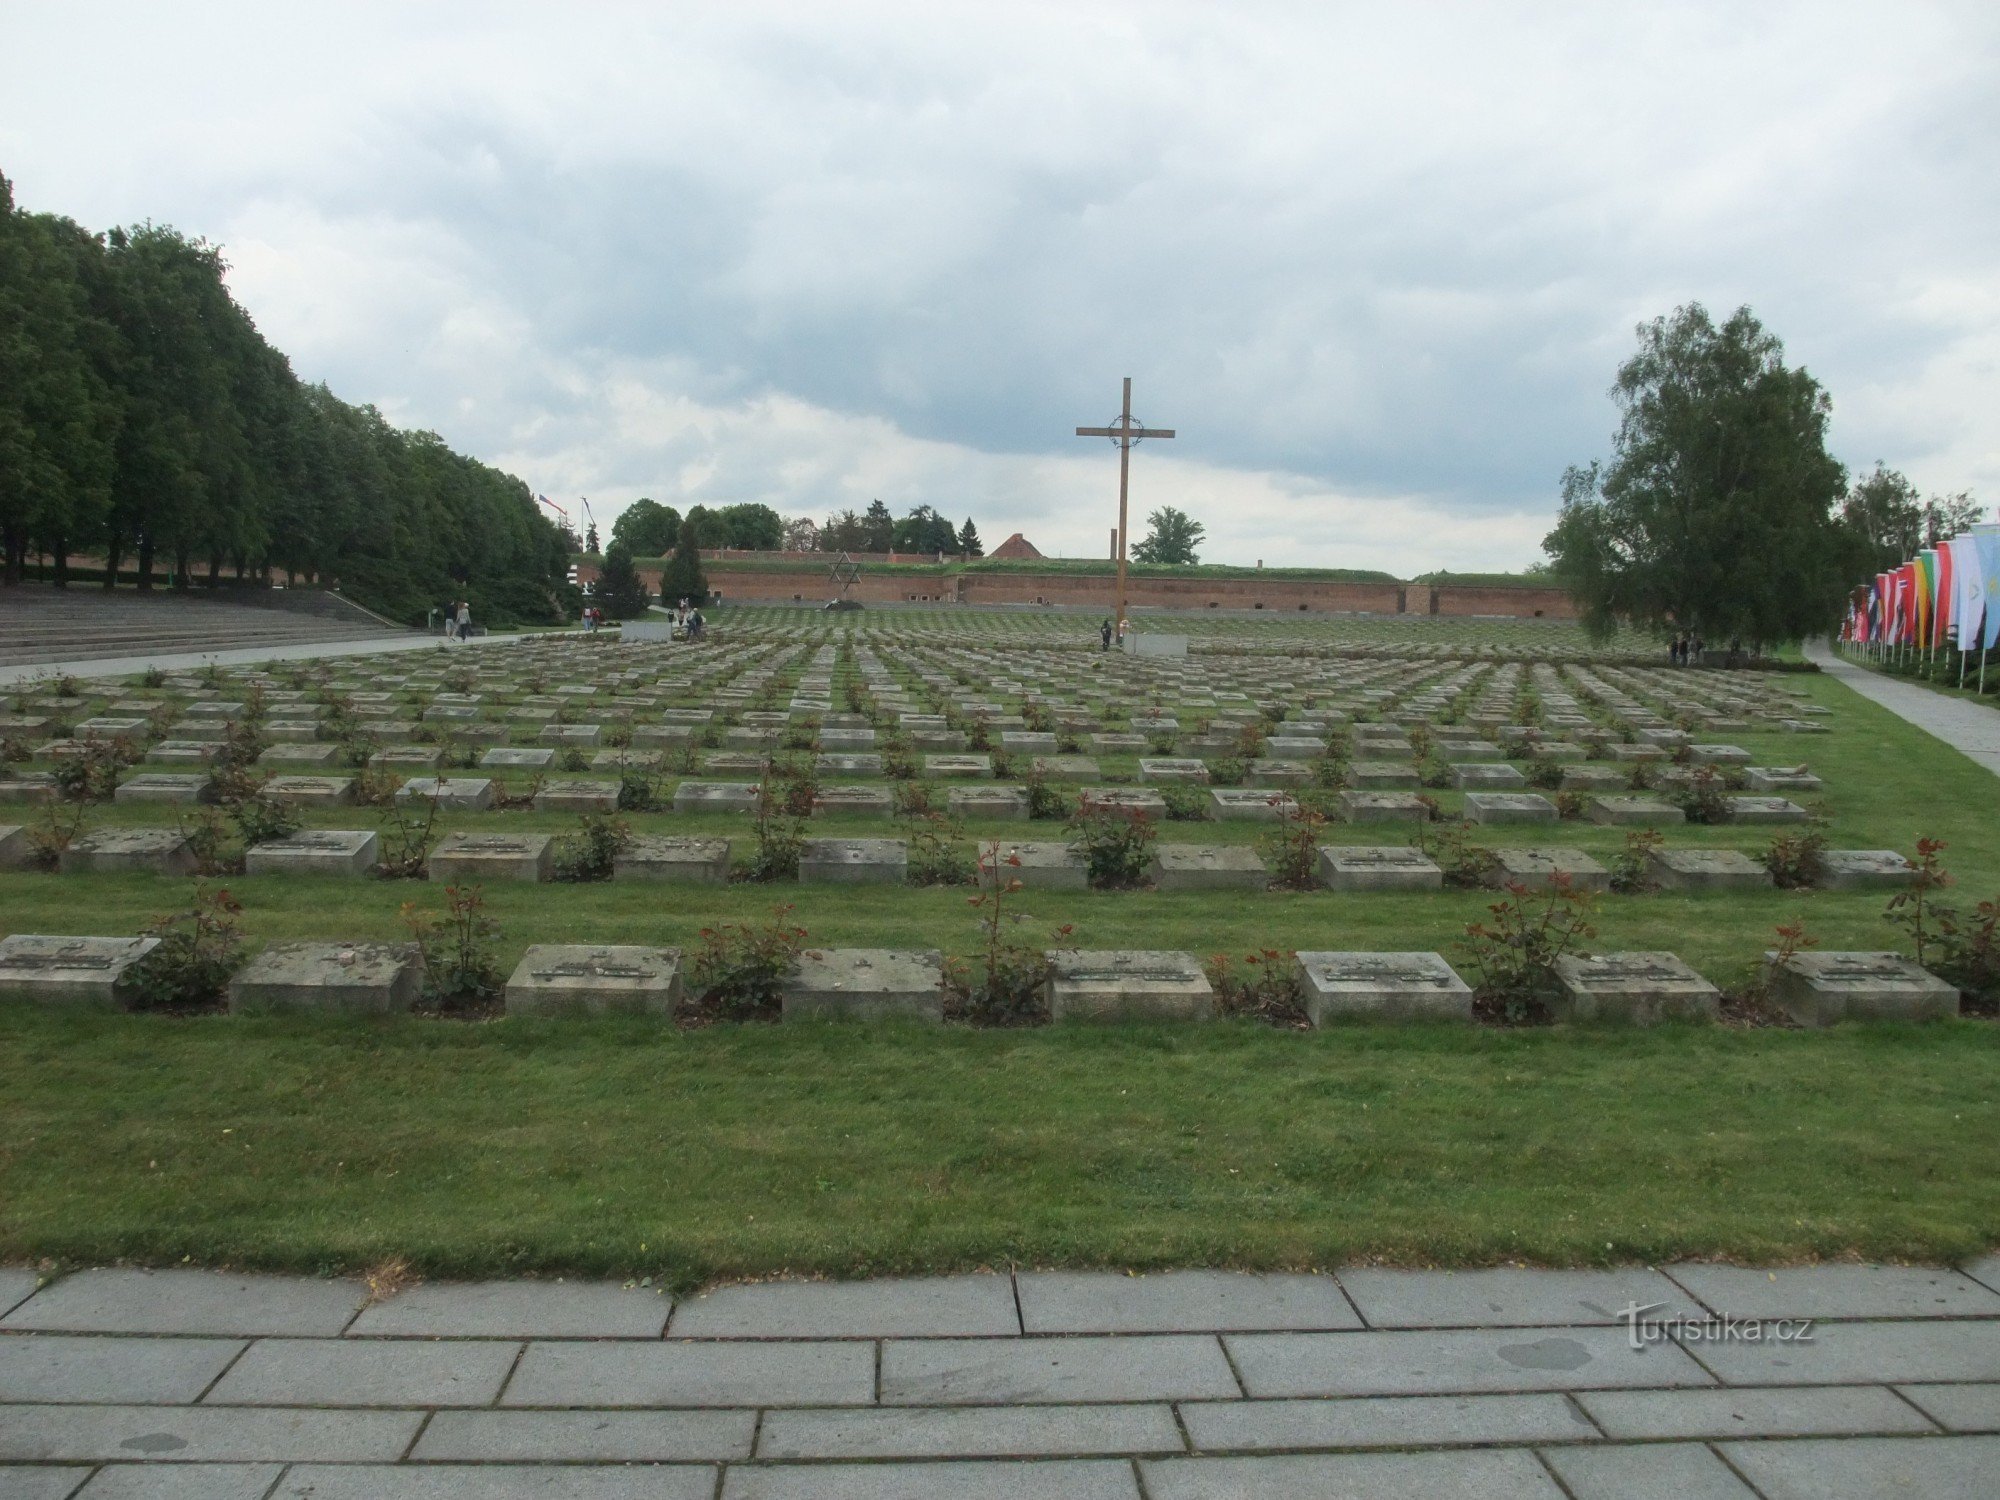 Εθνικό νεκροταφείο Terezín - σύμβολο της τσεχικής πολιτείας